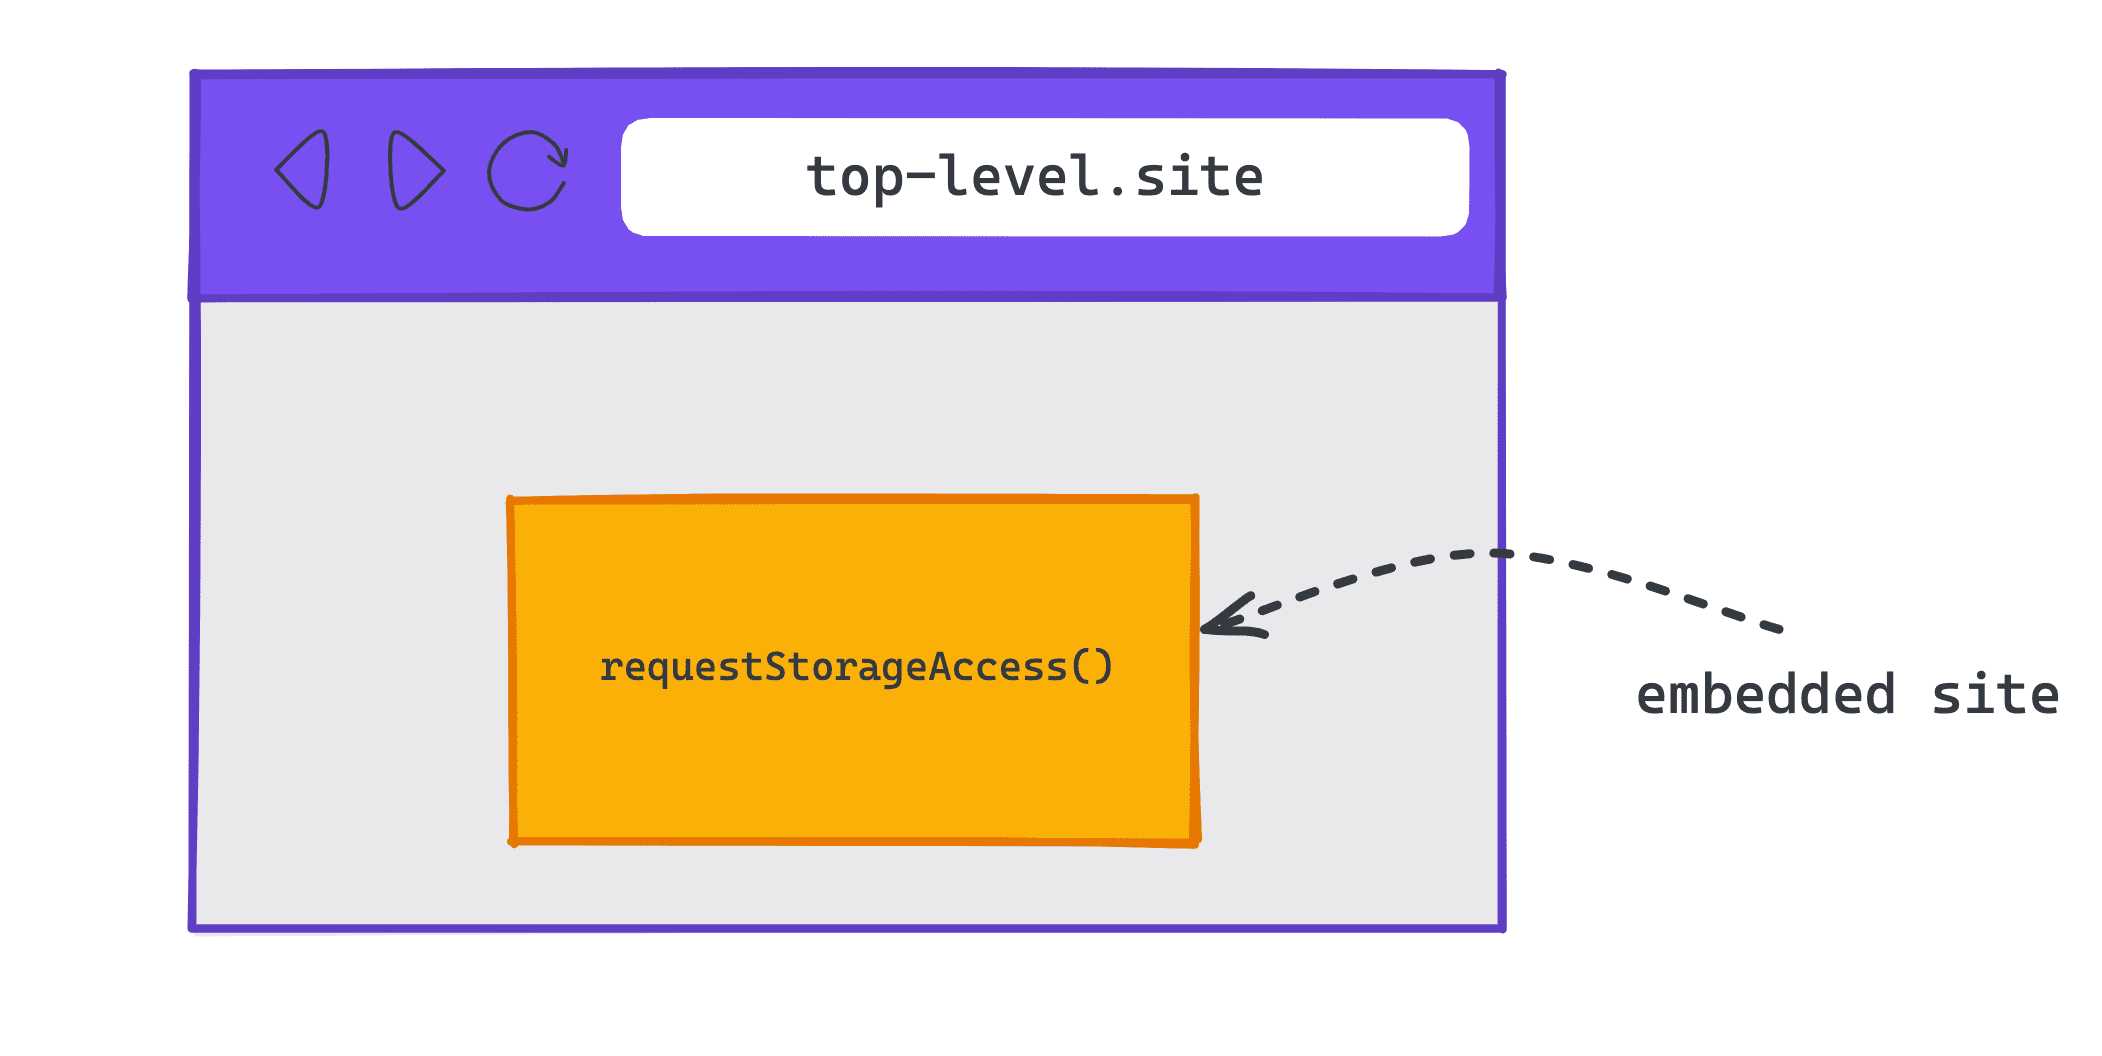 Diagrama que muestra un sitio incorporado en un sitio level.site superior